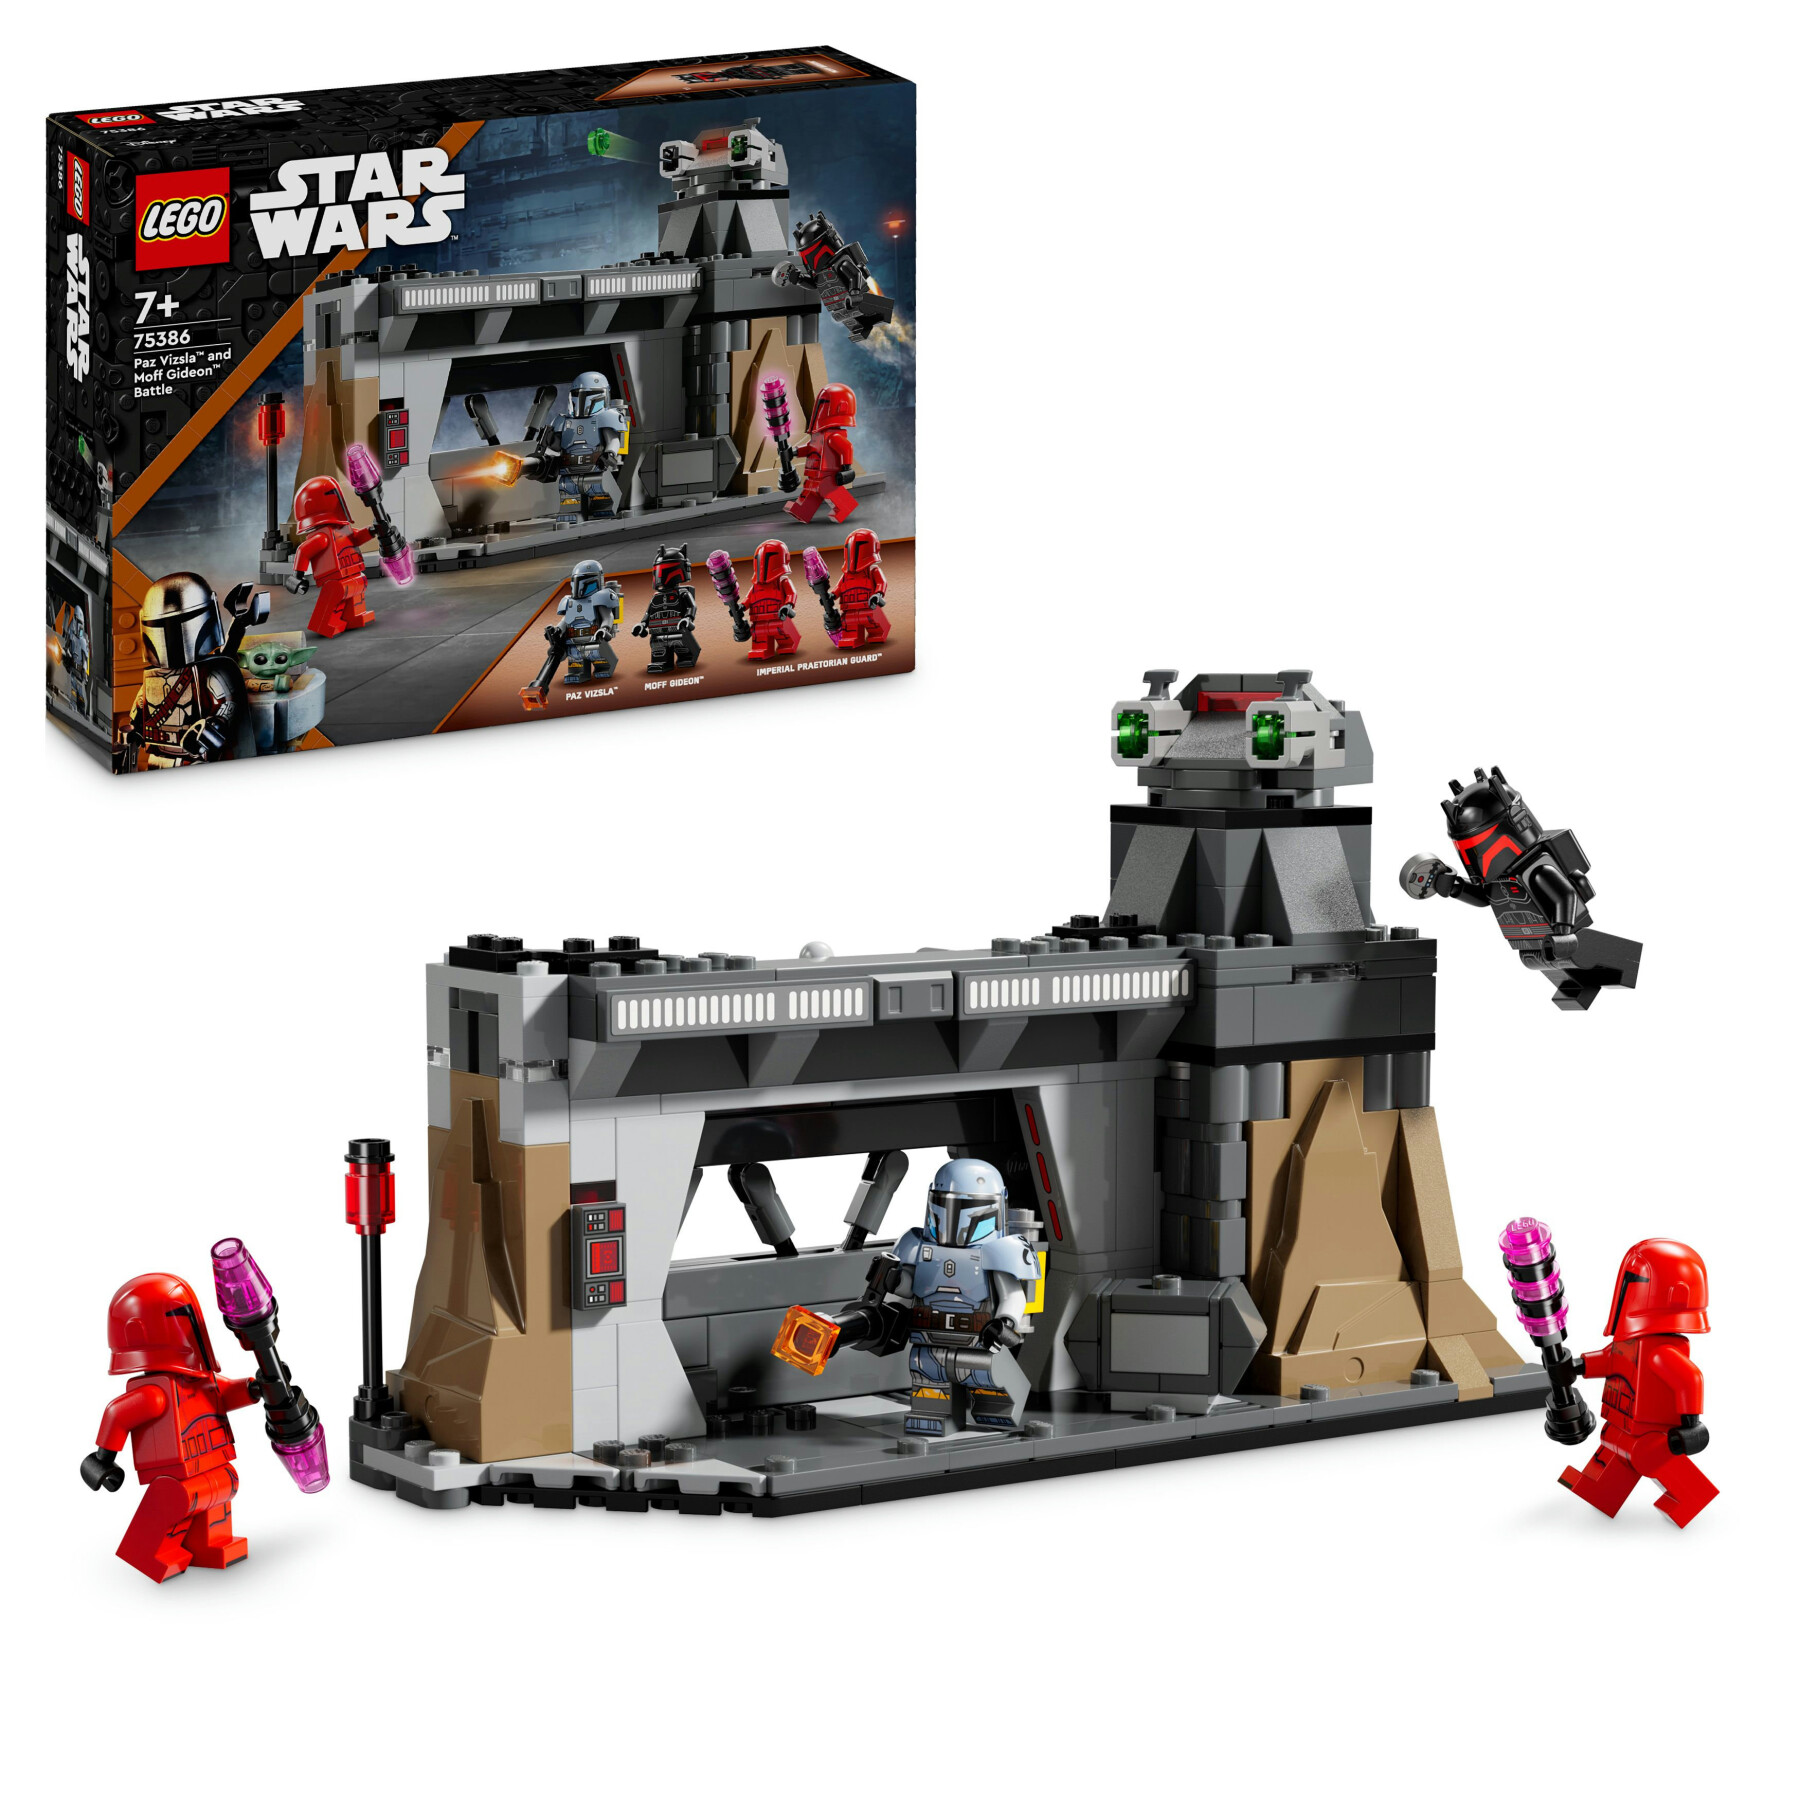 Lego star wars 75386 battaglia tra paz vizsla e moff gideon, giochi d'avventura per bambini 7+ da collezione con 4 minifigure - LEGO® Star Wars™